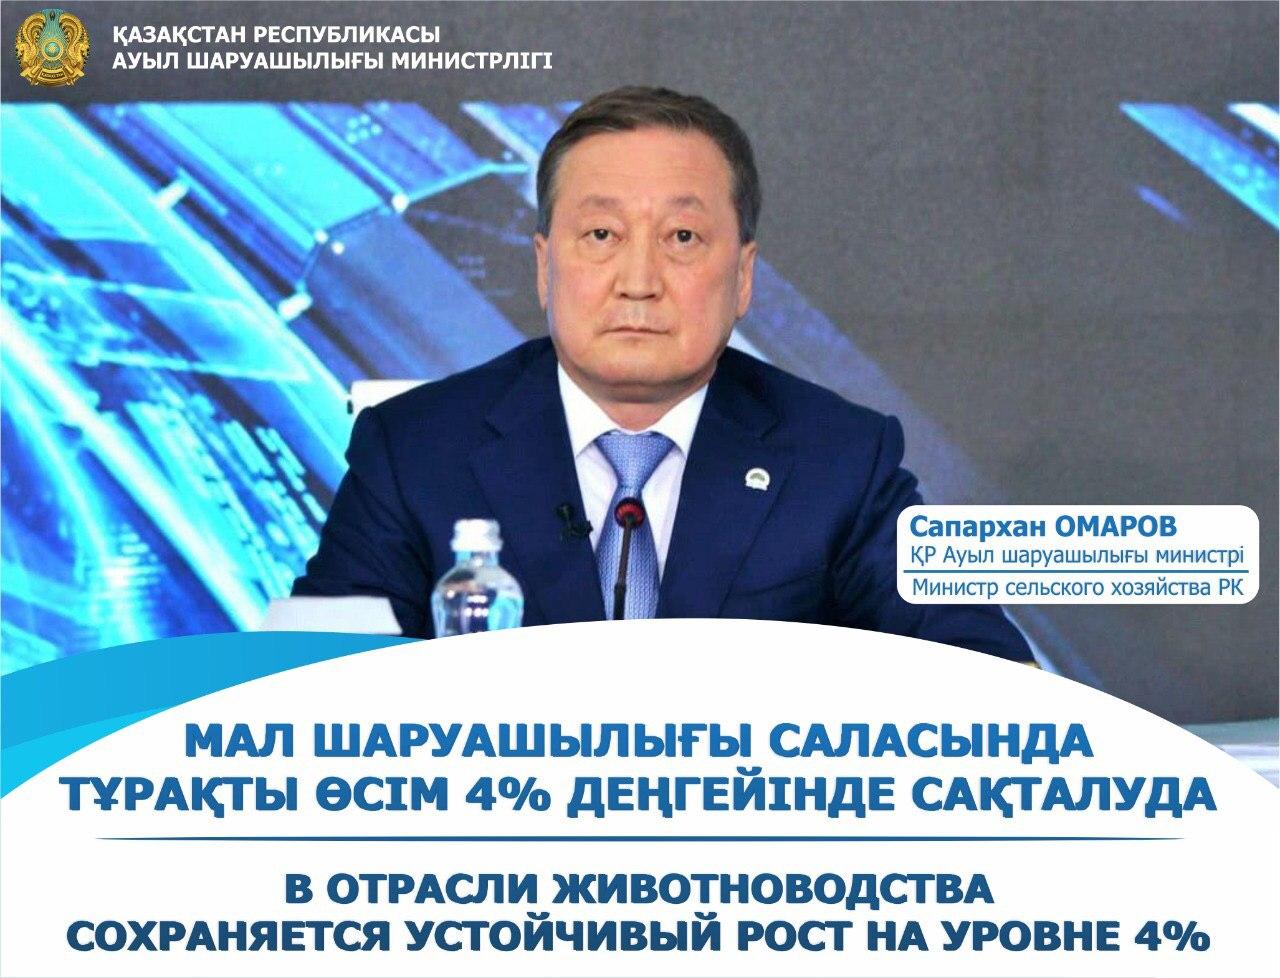 Объем валовой продукции в Казахстане по итогам года вырос до 2,3 трлн тенге